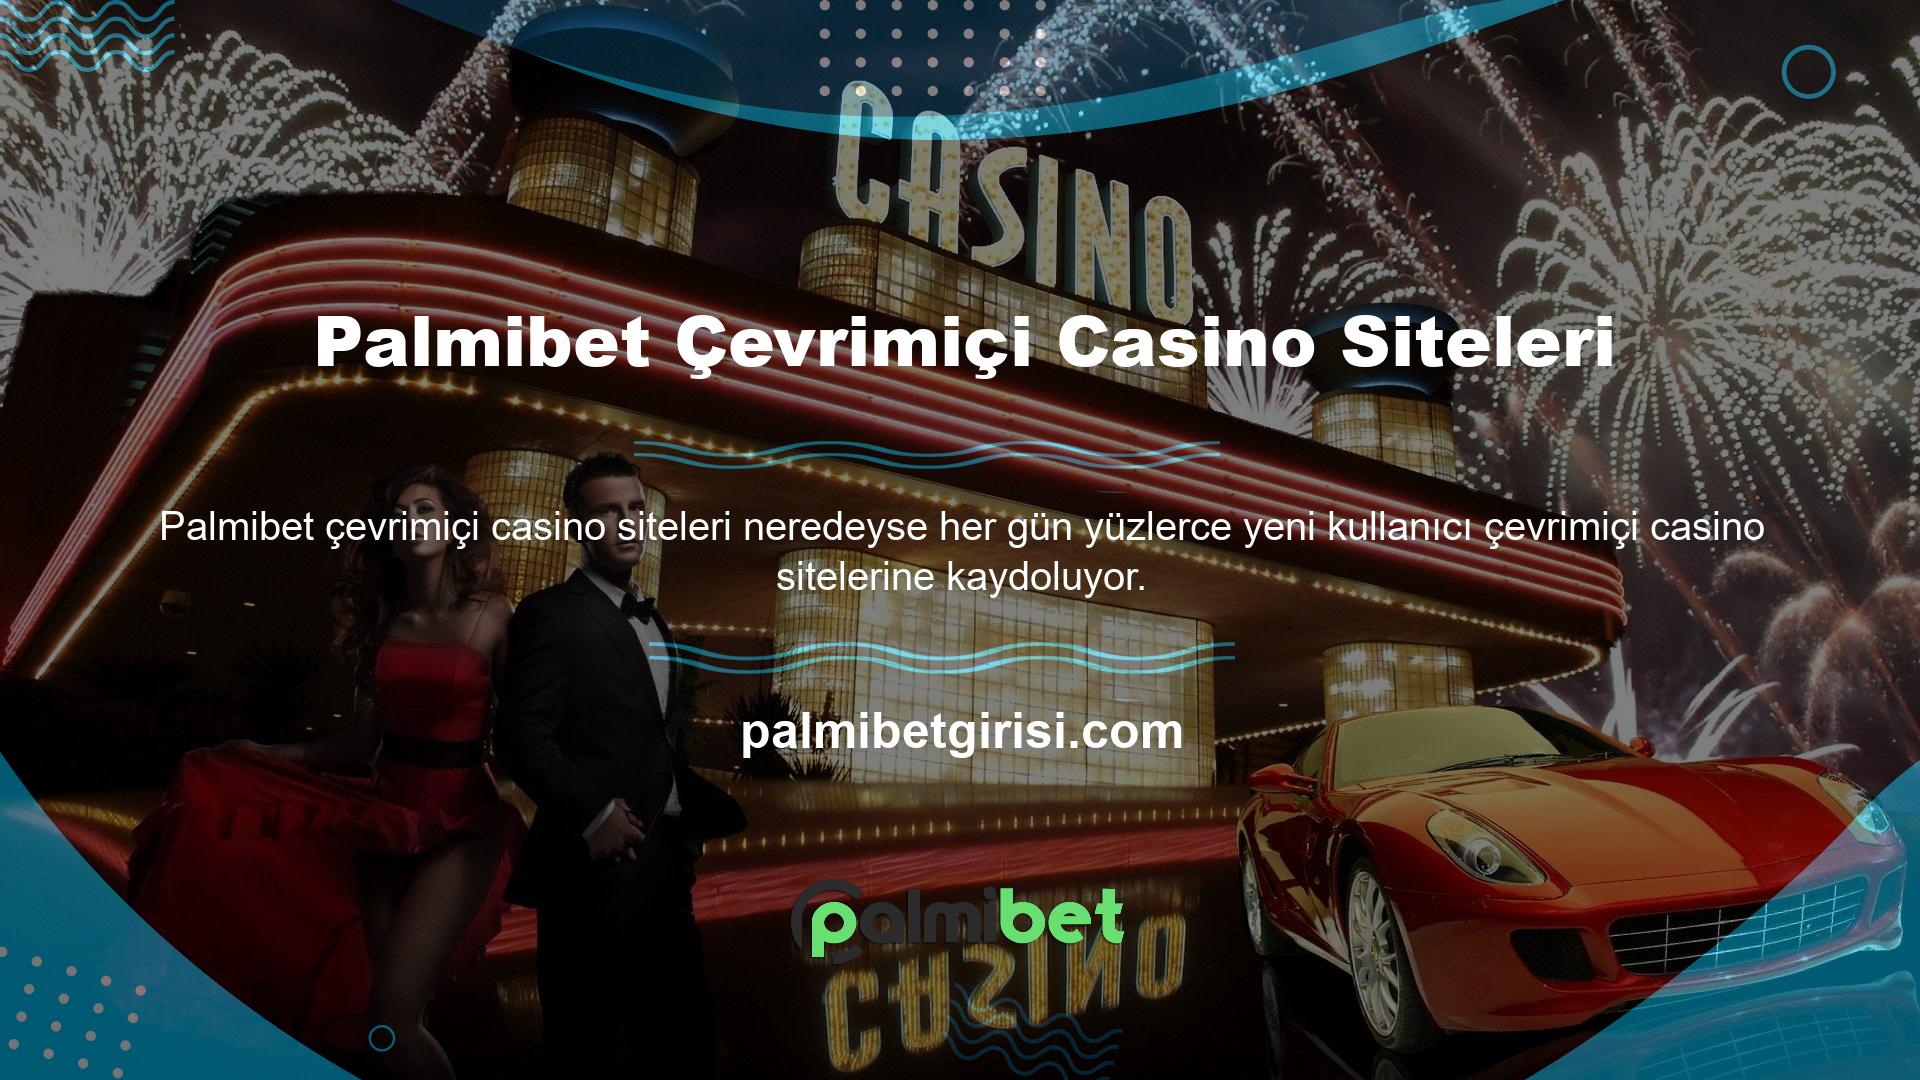 Elbette çevrimiçi casino sitelerinin sayısı artıyor ve çevrimiçi casino sitelerine üye olduğunu iddia eden kişilerin sayısı da artıyor